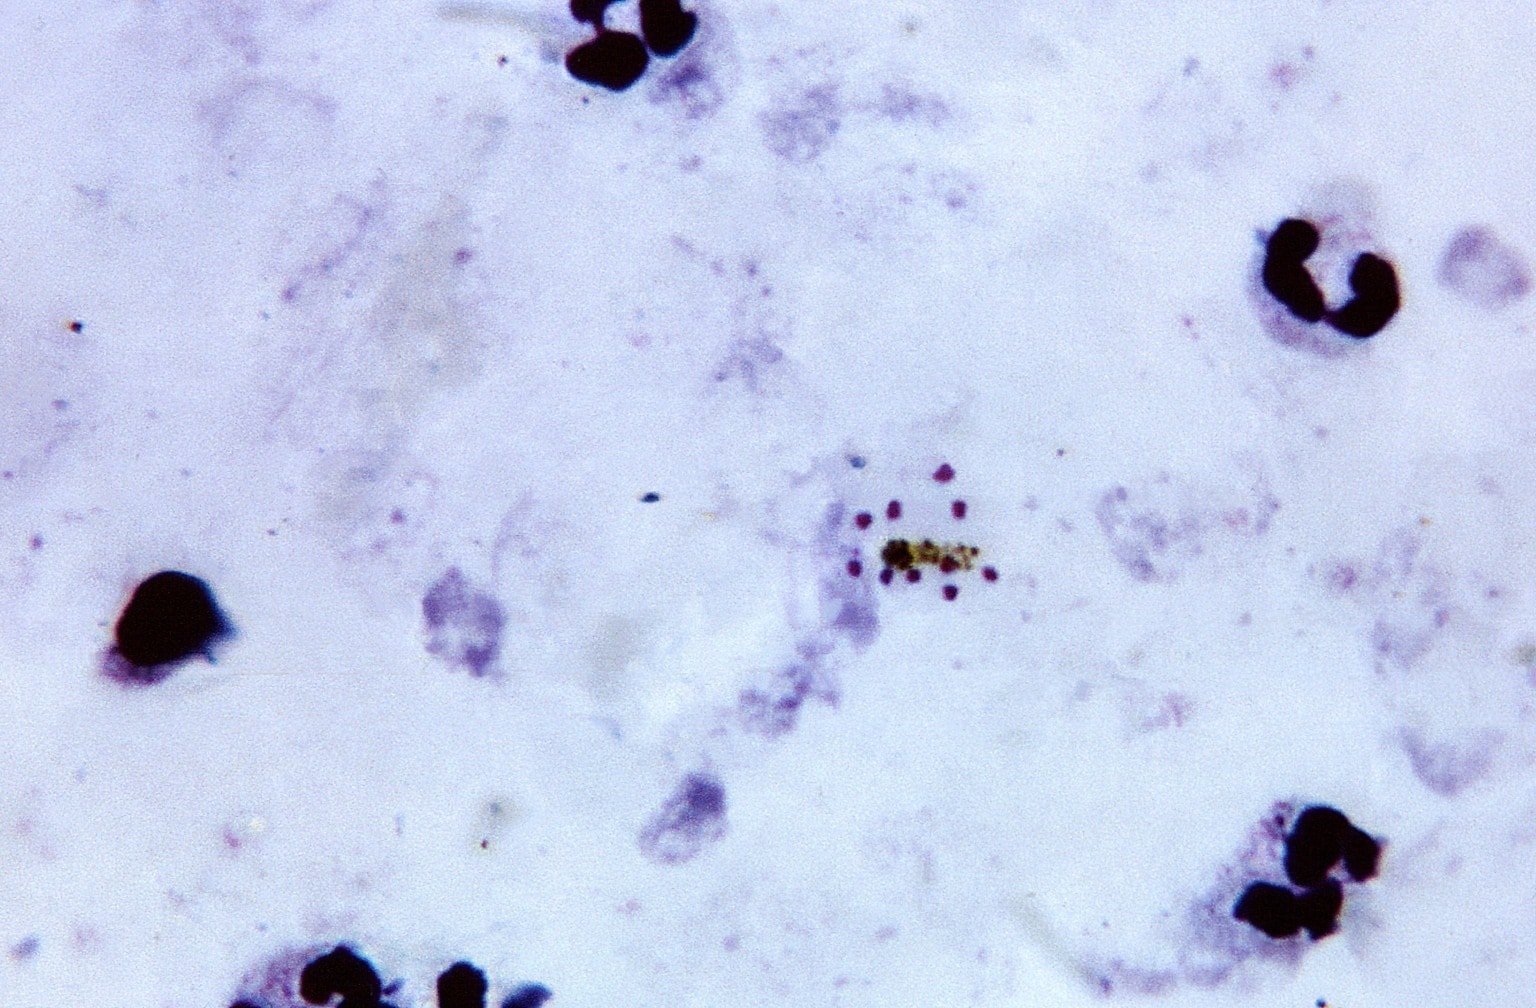 Цитоплазма Plasmodium. Малярийный плазмодий под микроскопом. Синцитий плазмодий. Многочисленные мелкие тельца